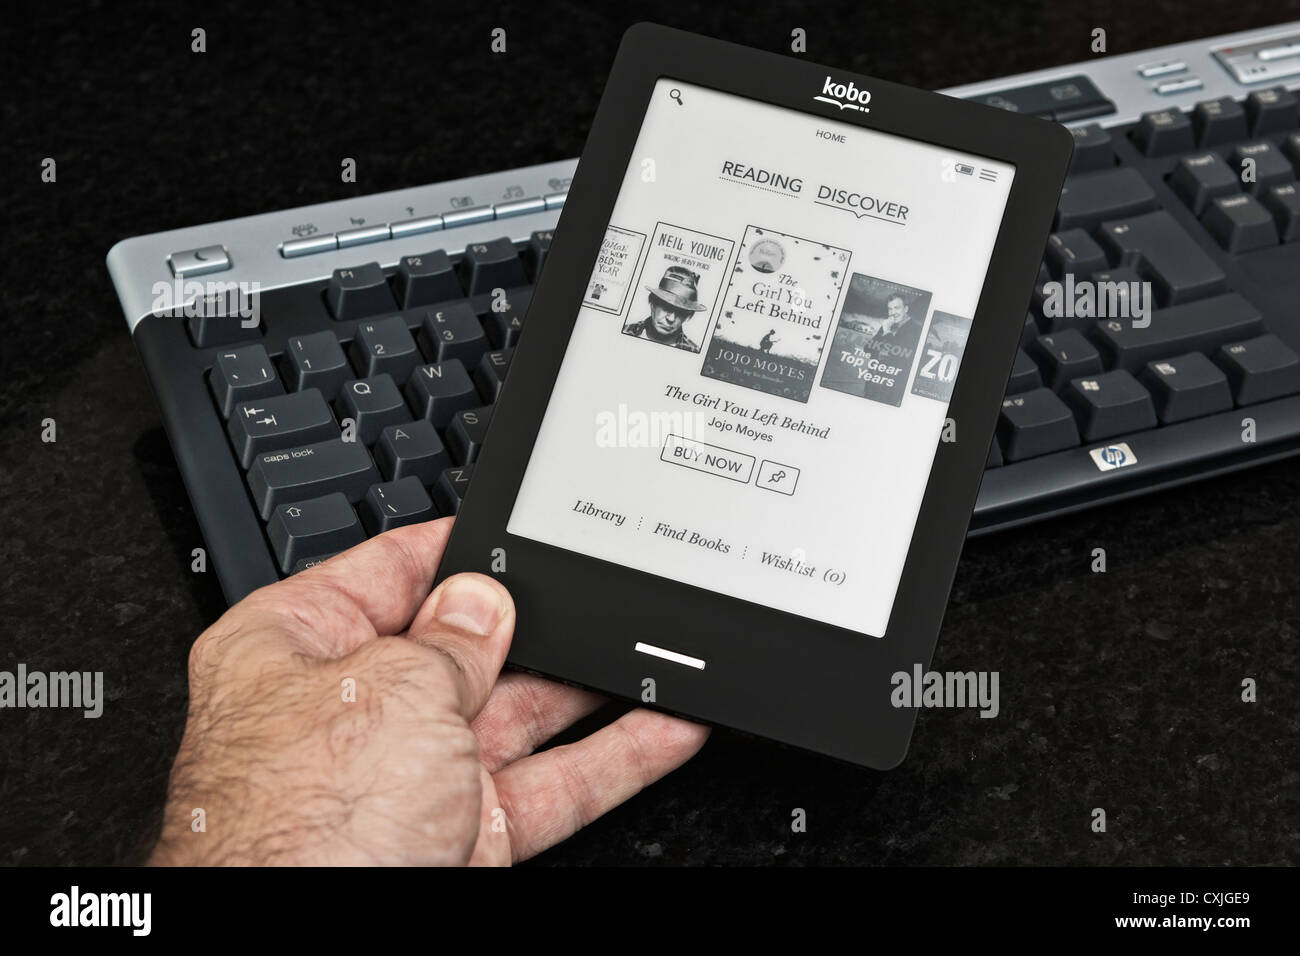 Un uomo tiene e legge un Kobo touch ereader (ebook) vicino alla tastiera di un computer. Foto Stock